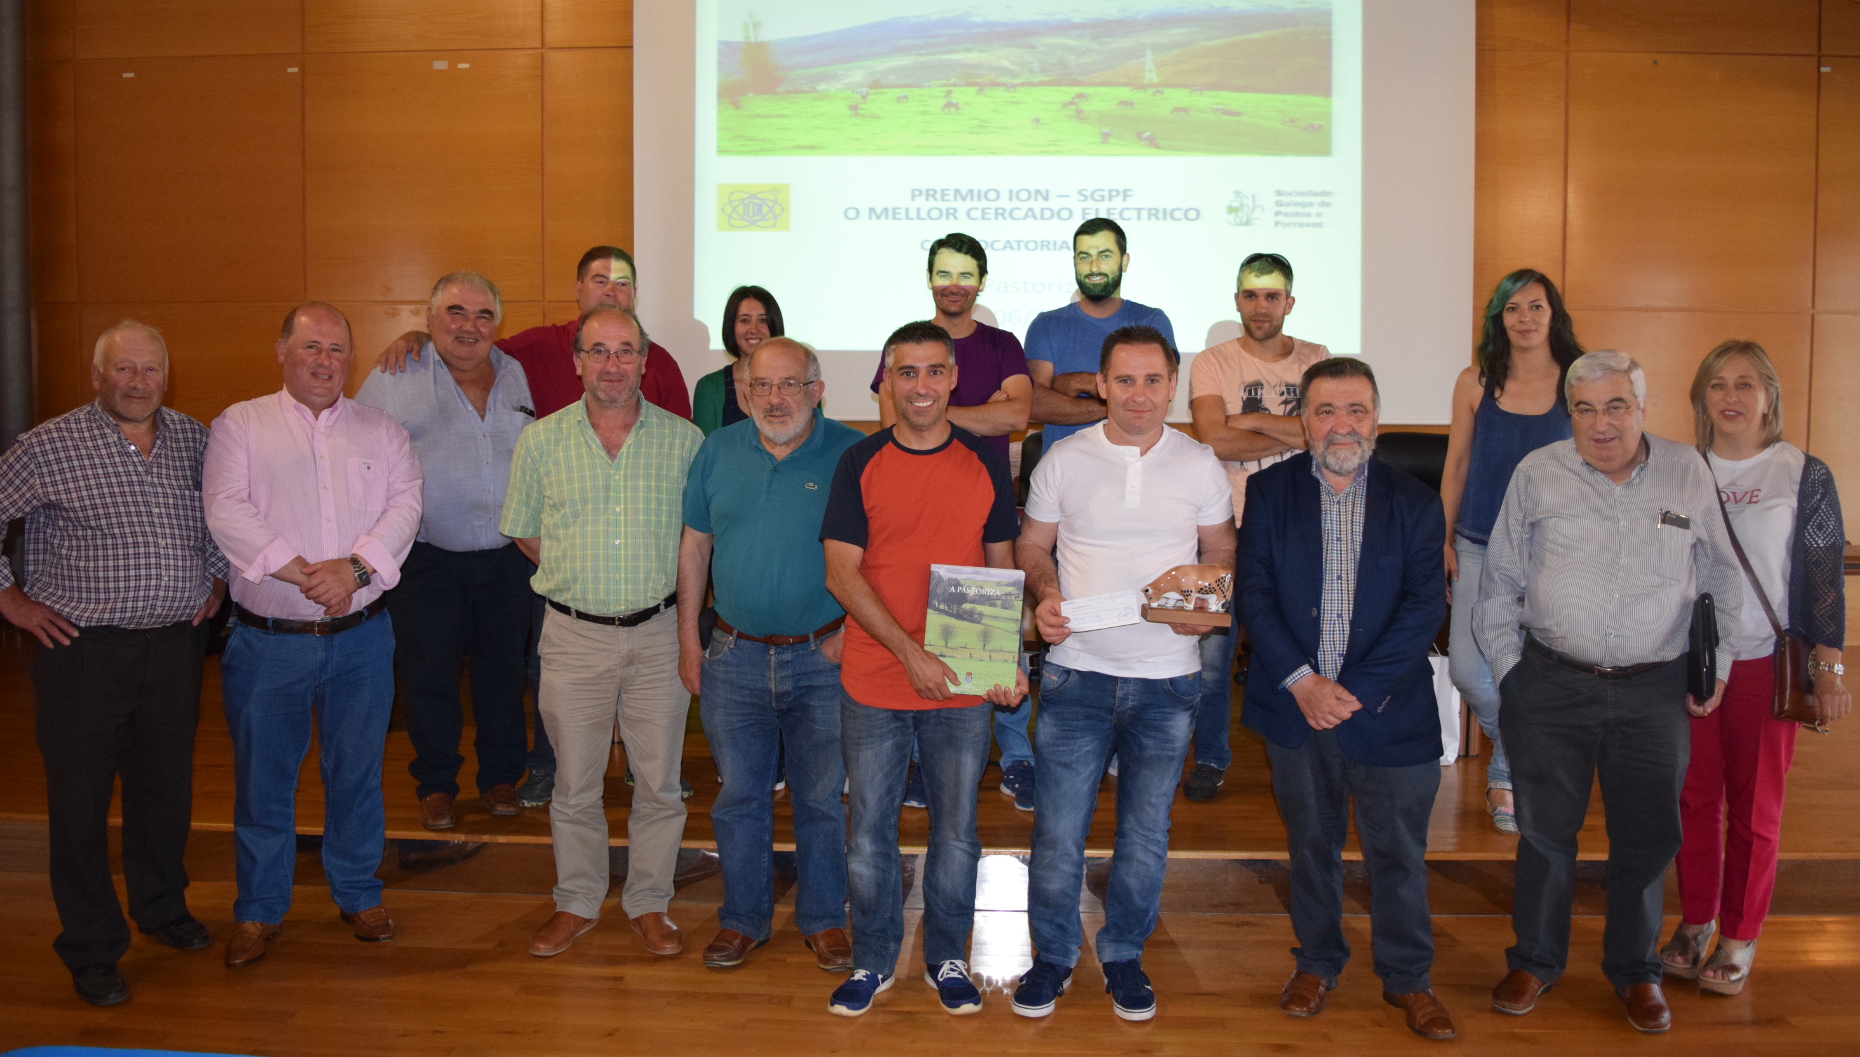 Amaro López, un gandeiro de Baleira, recibe o premio ION-SGPF ao mellor peche eléctrico